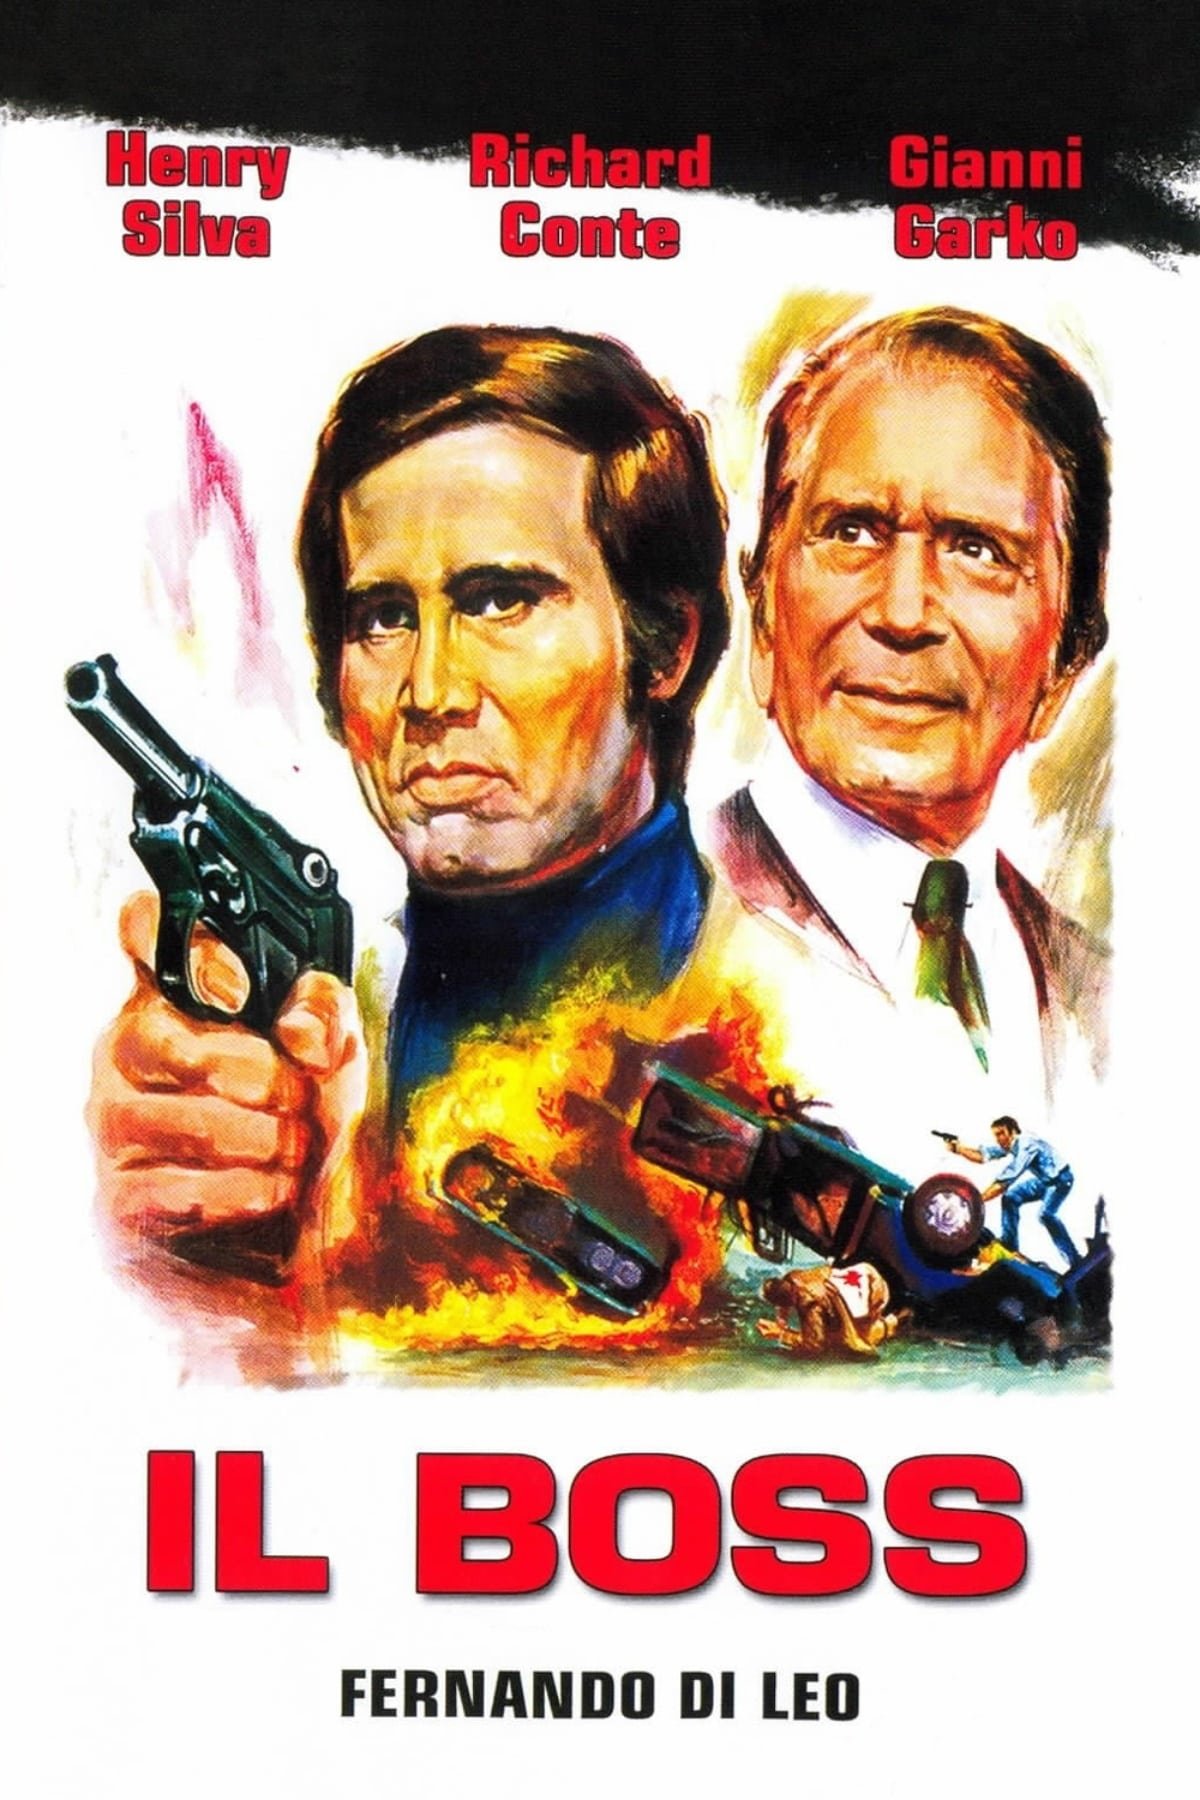 Il Boss [HD] (1973)